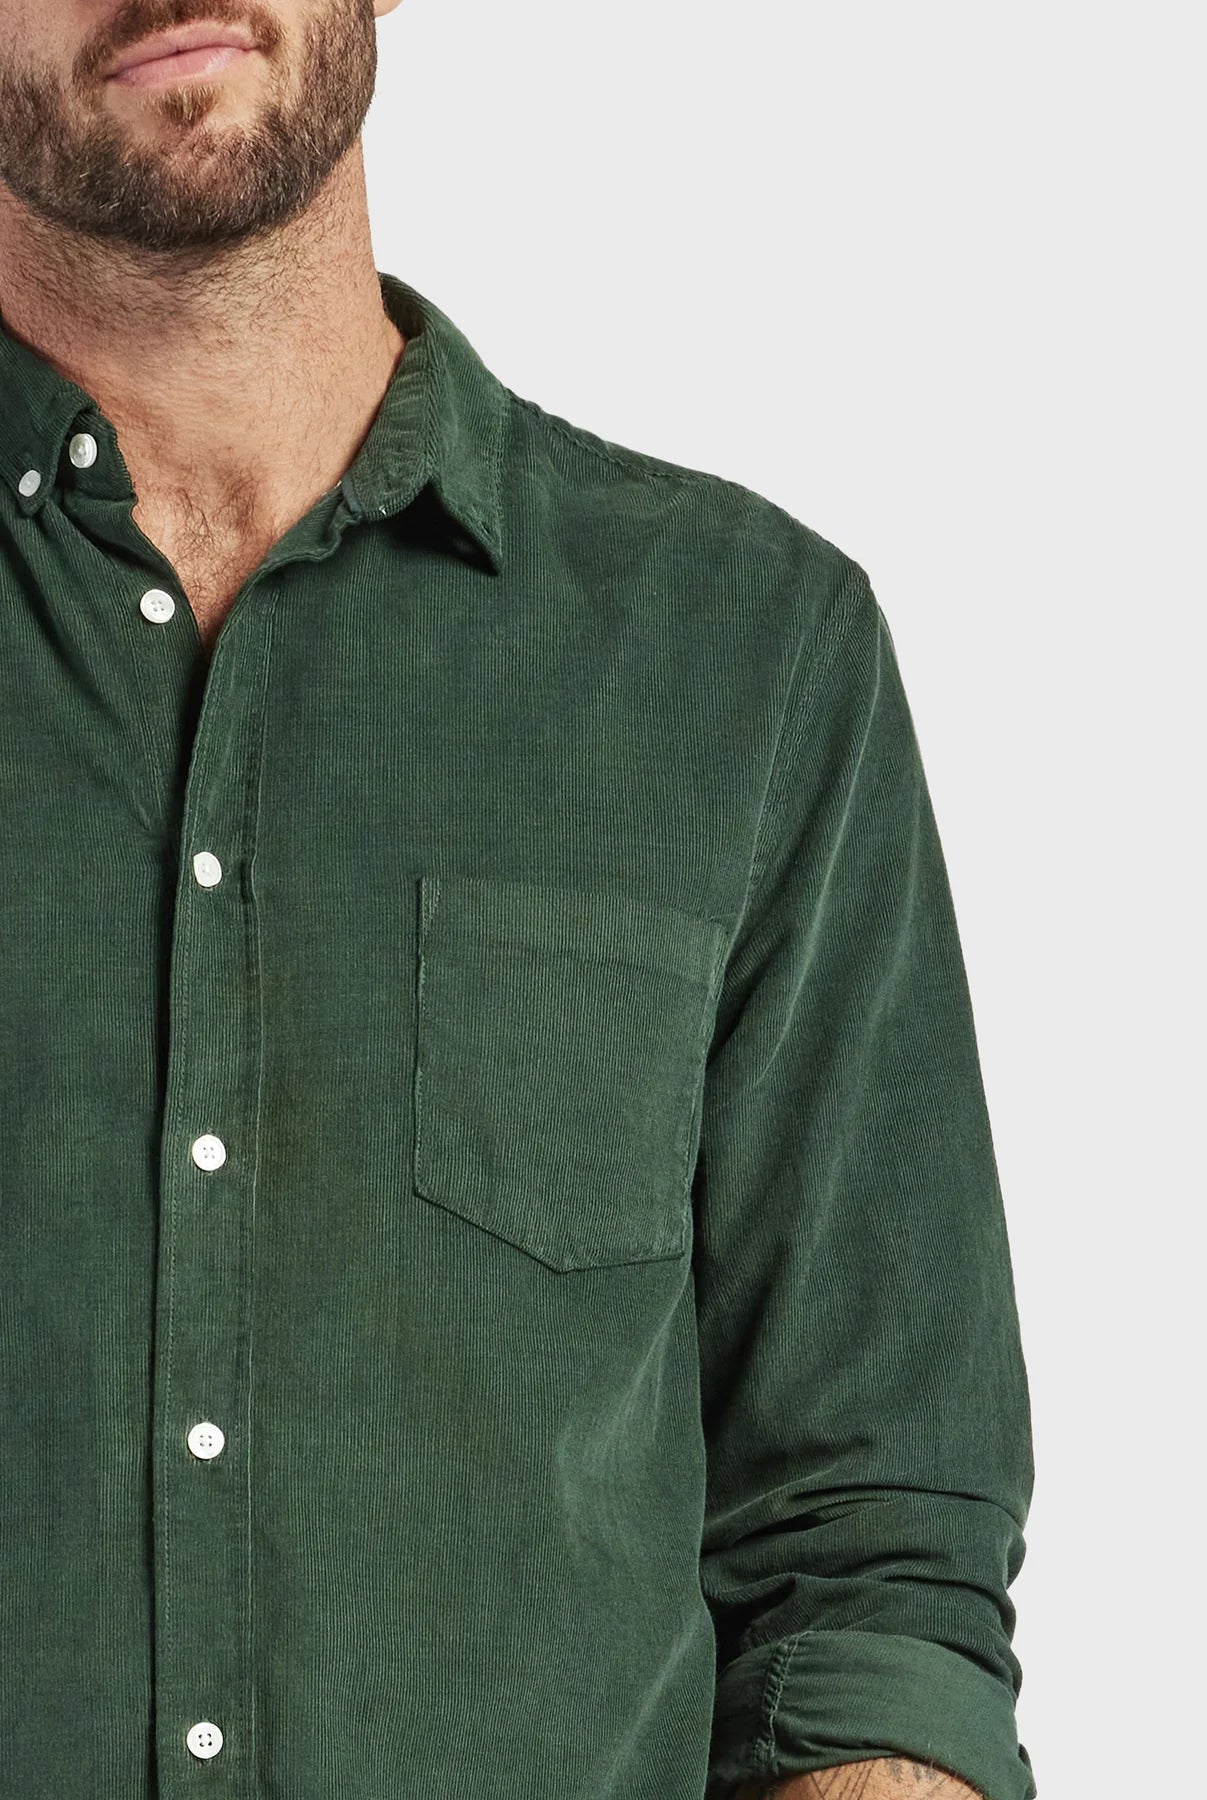 Micro Cord Shirt in Sherwood Green